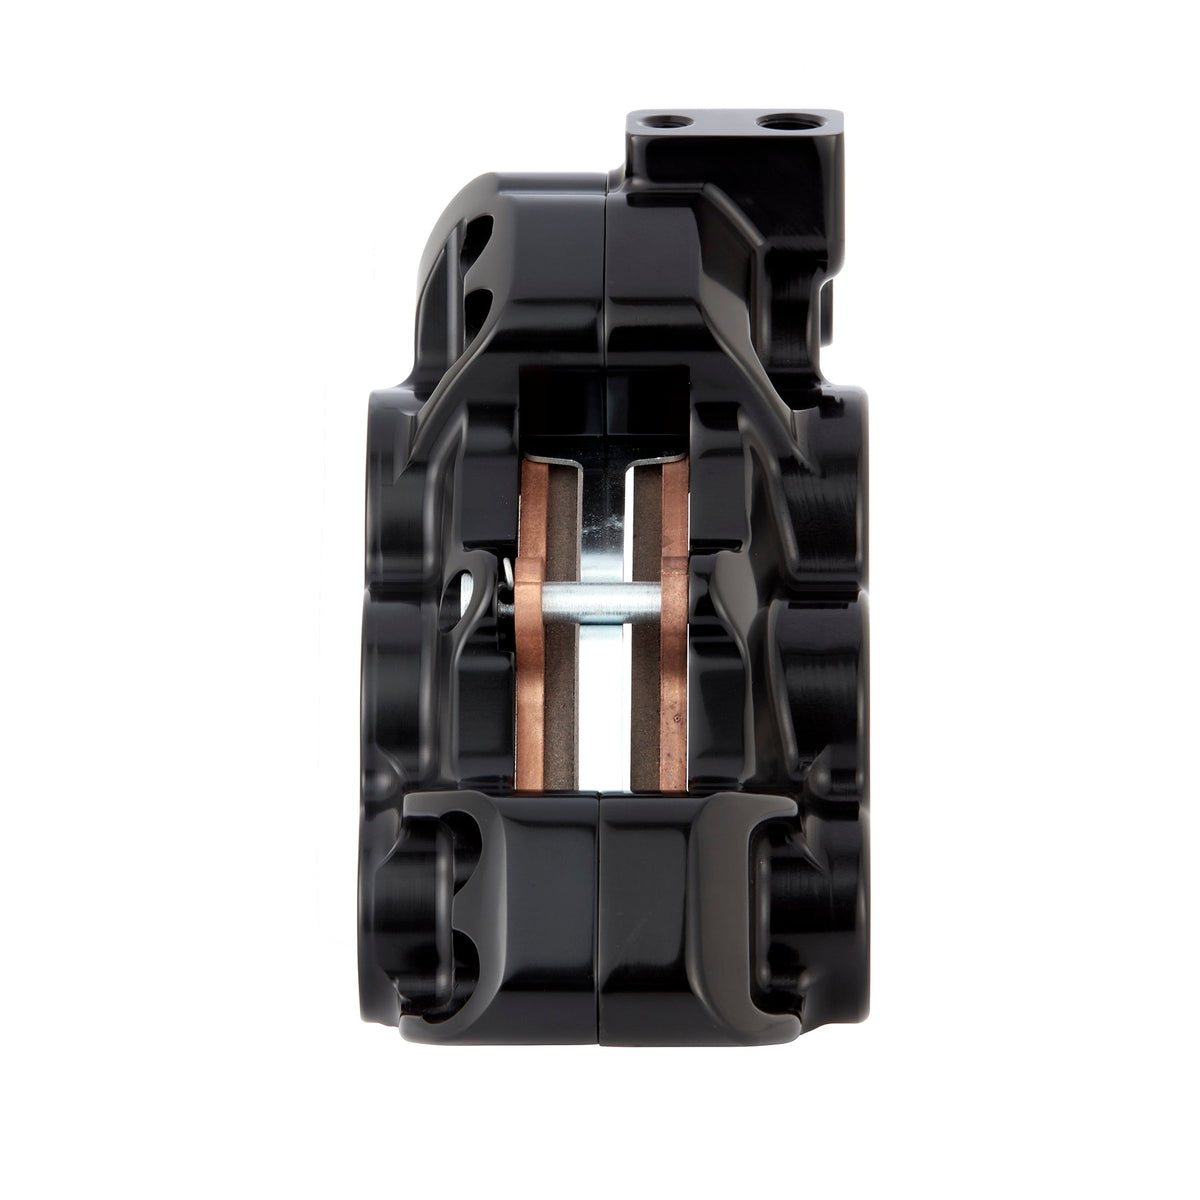 6-Piston Differential Bore Brake Calipers - 14"